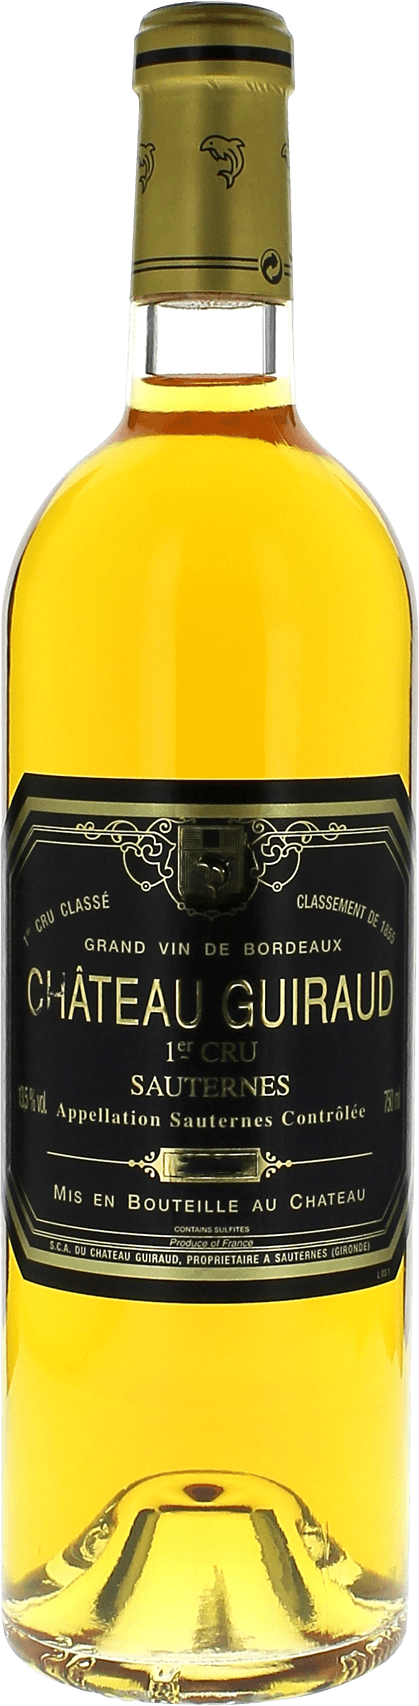 Guiraud 2000  Sauternes, Bordeaux blanc